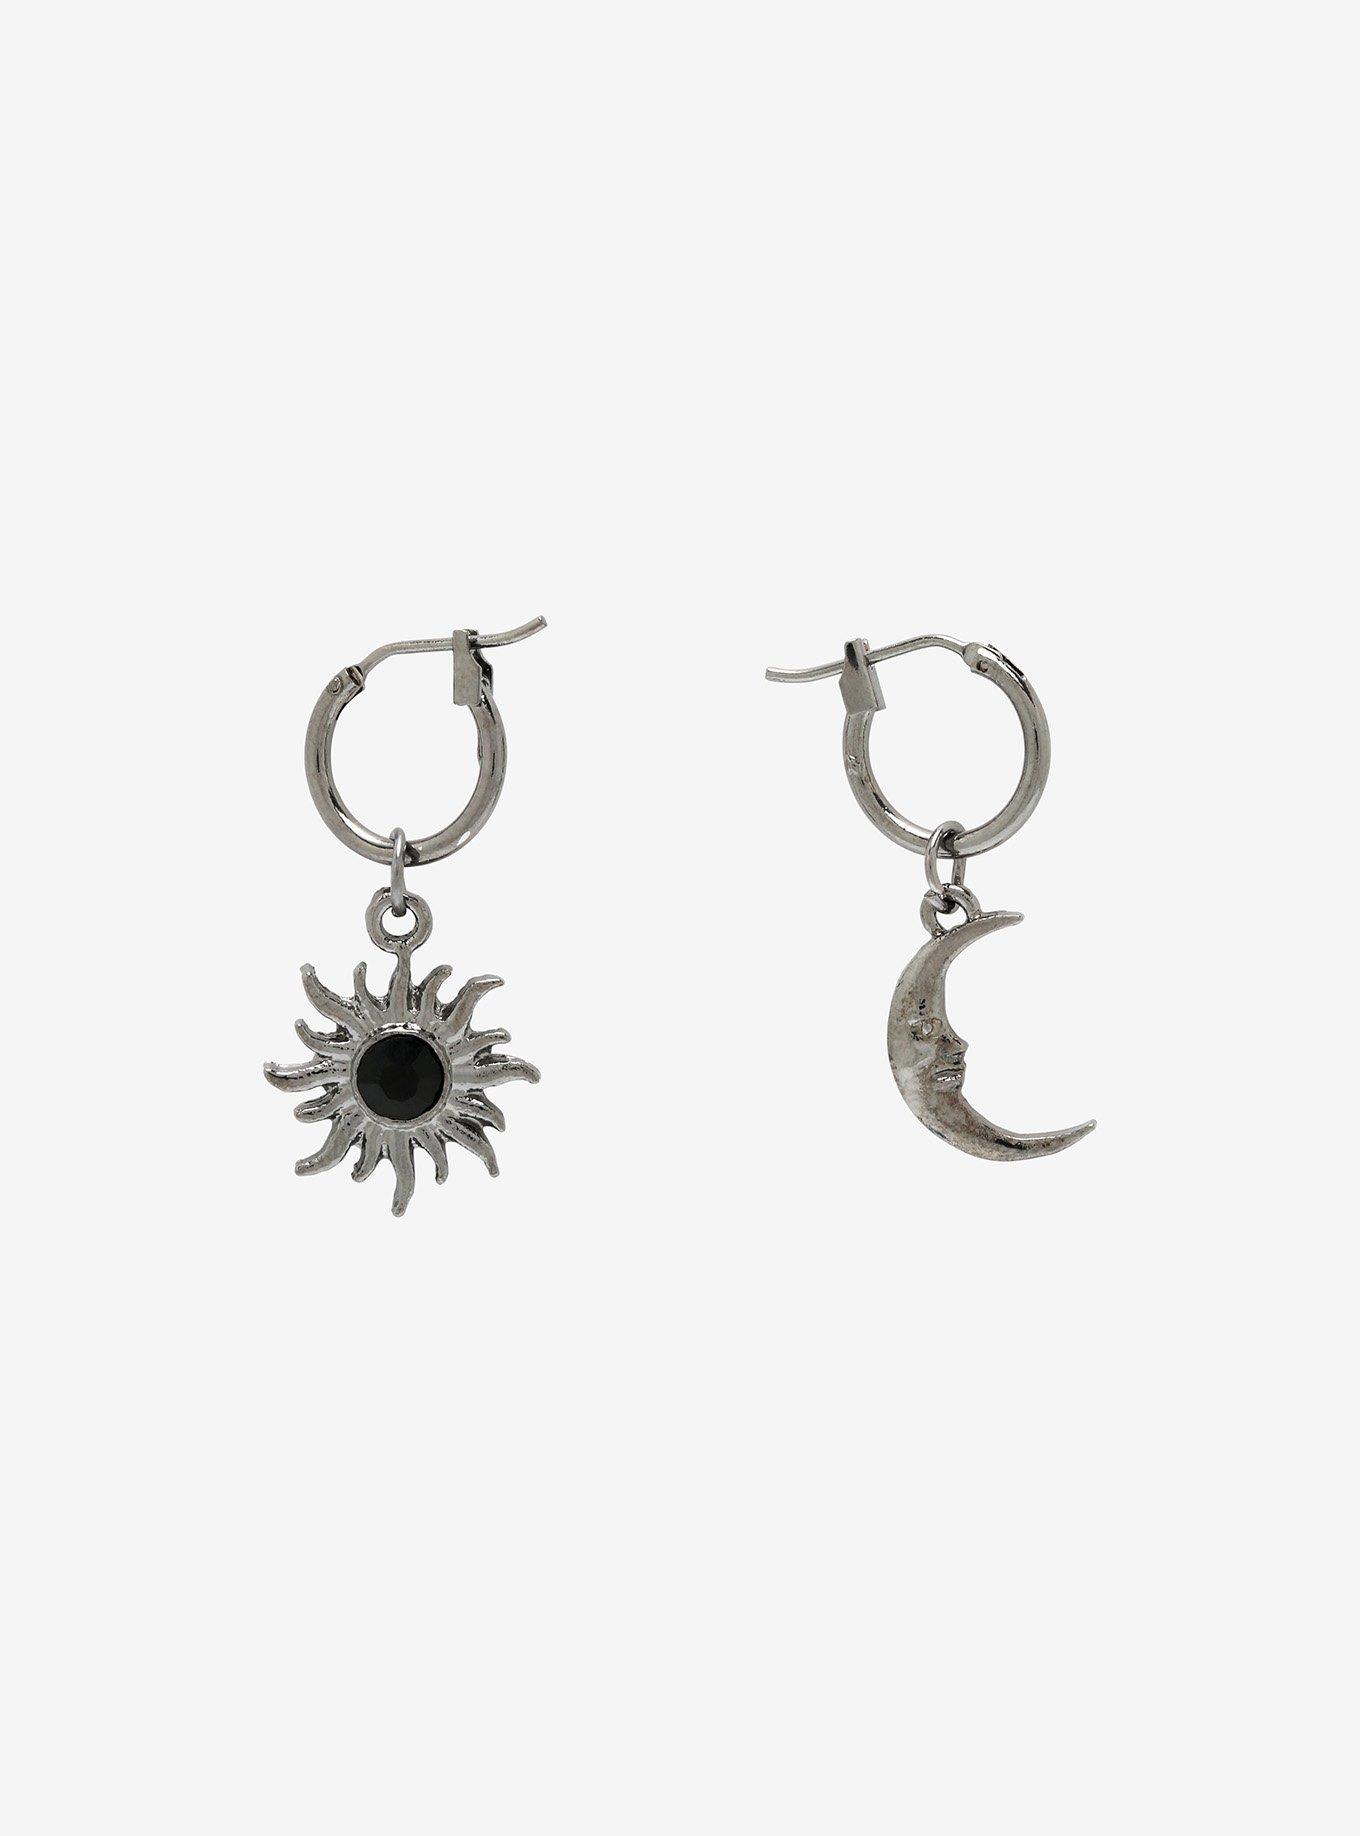 Star & Moon Mismatch Hoop Earrings, , hi-res